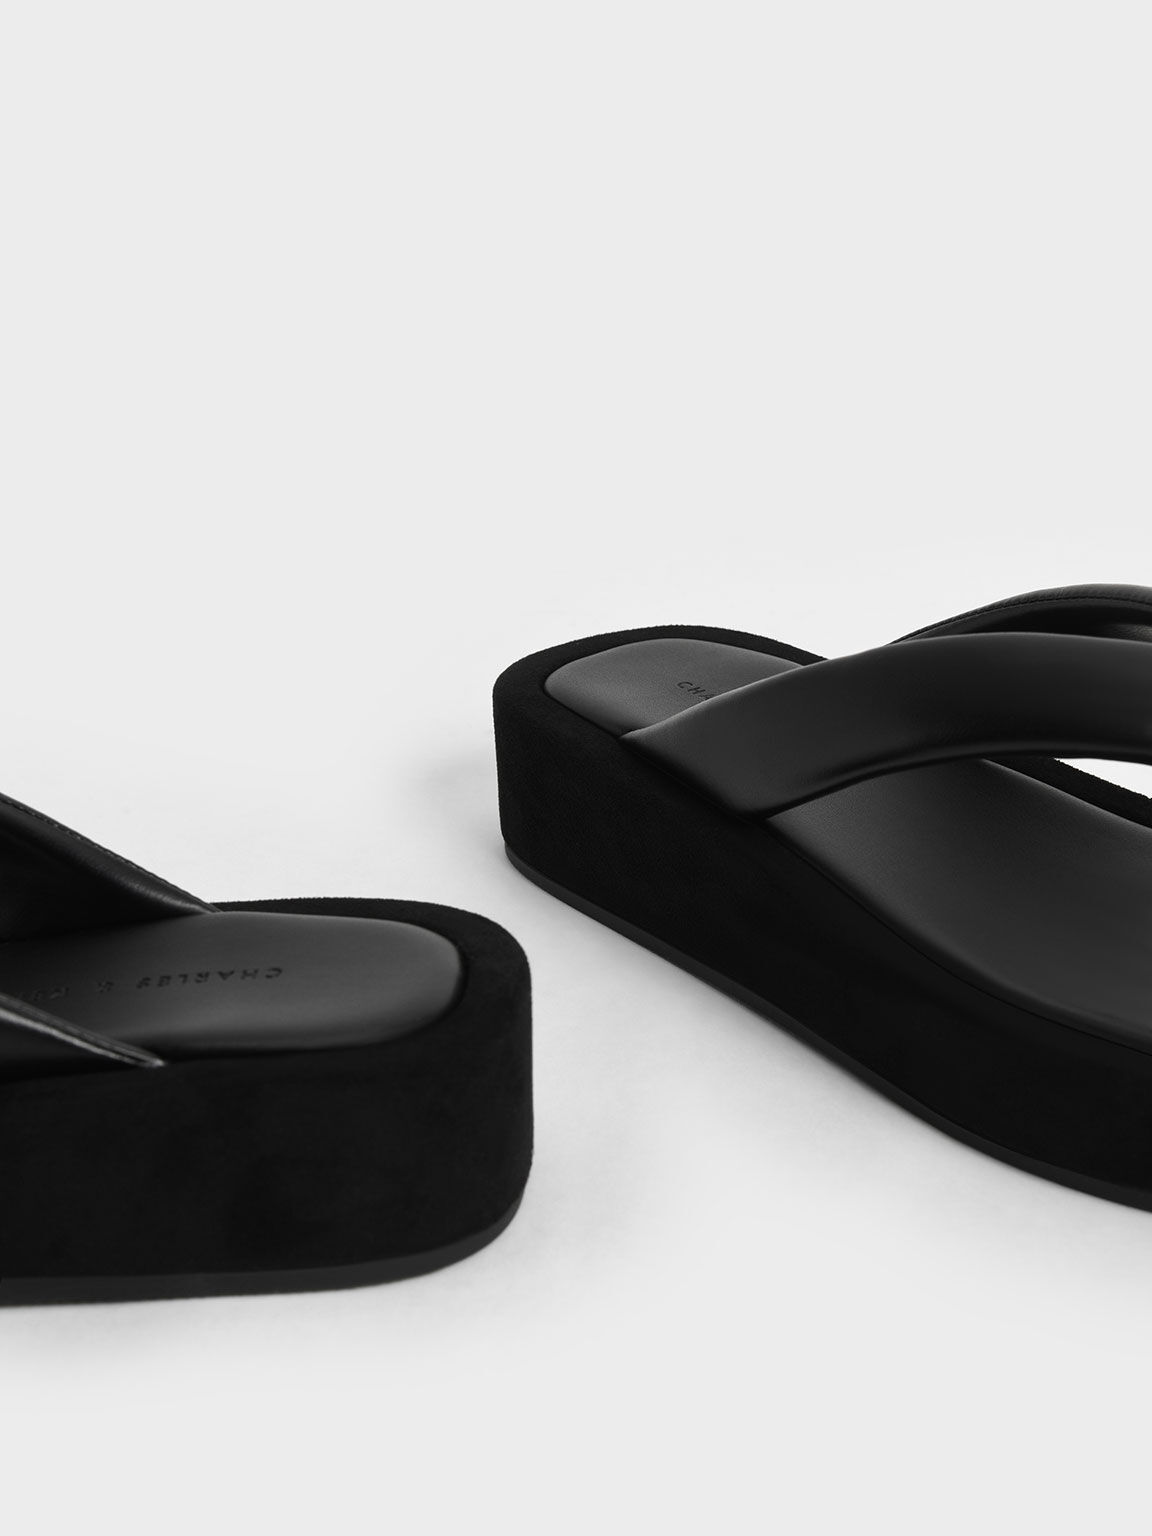 Padded Platform Thong Sandals, Black, hi-res